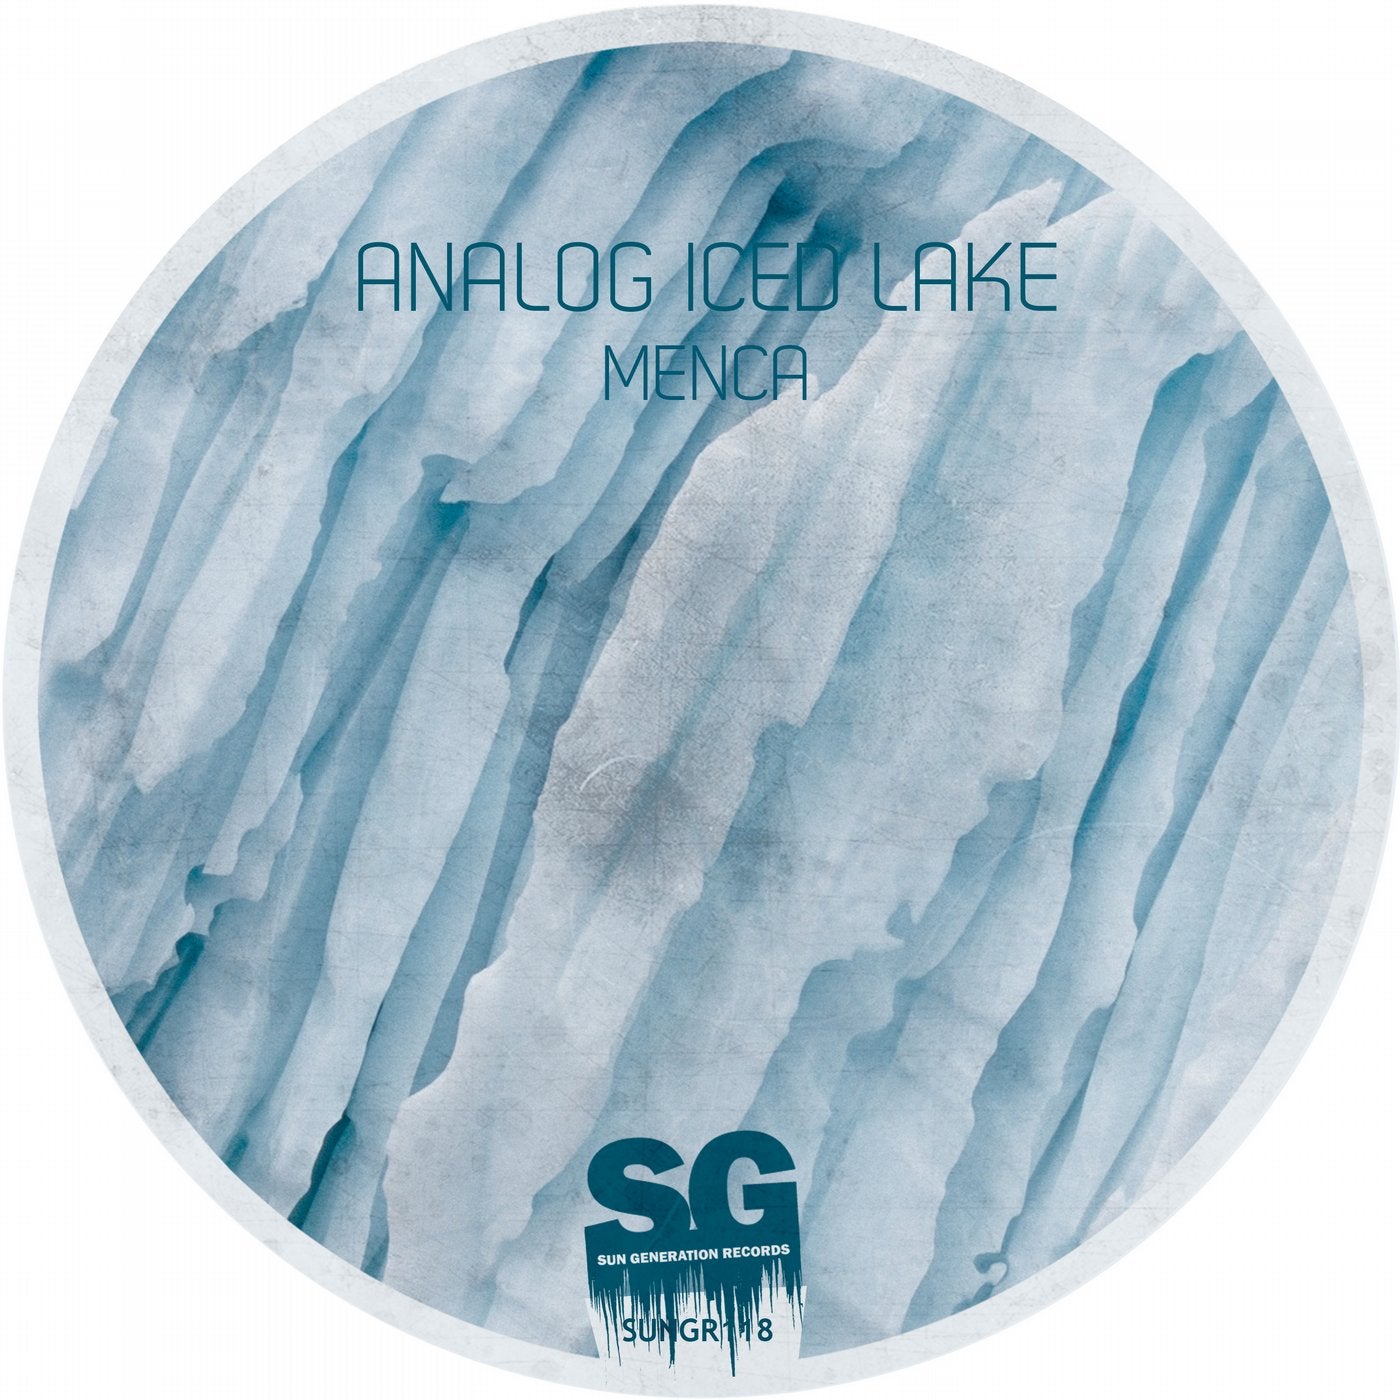 Analog Iced Lake